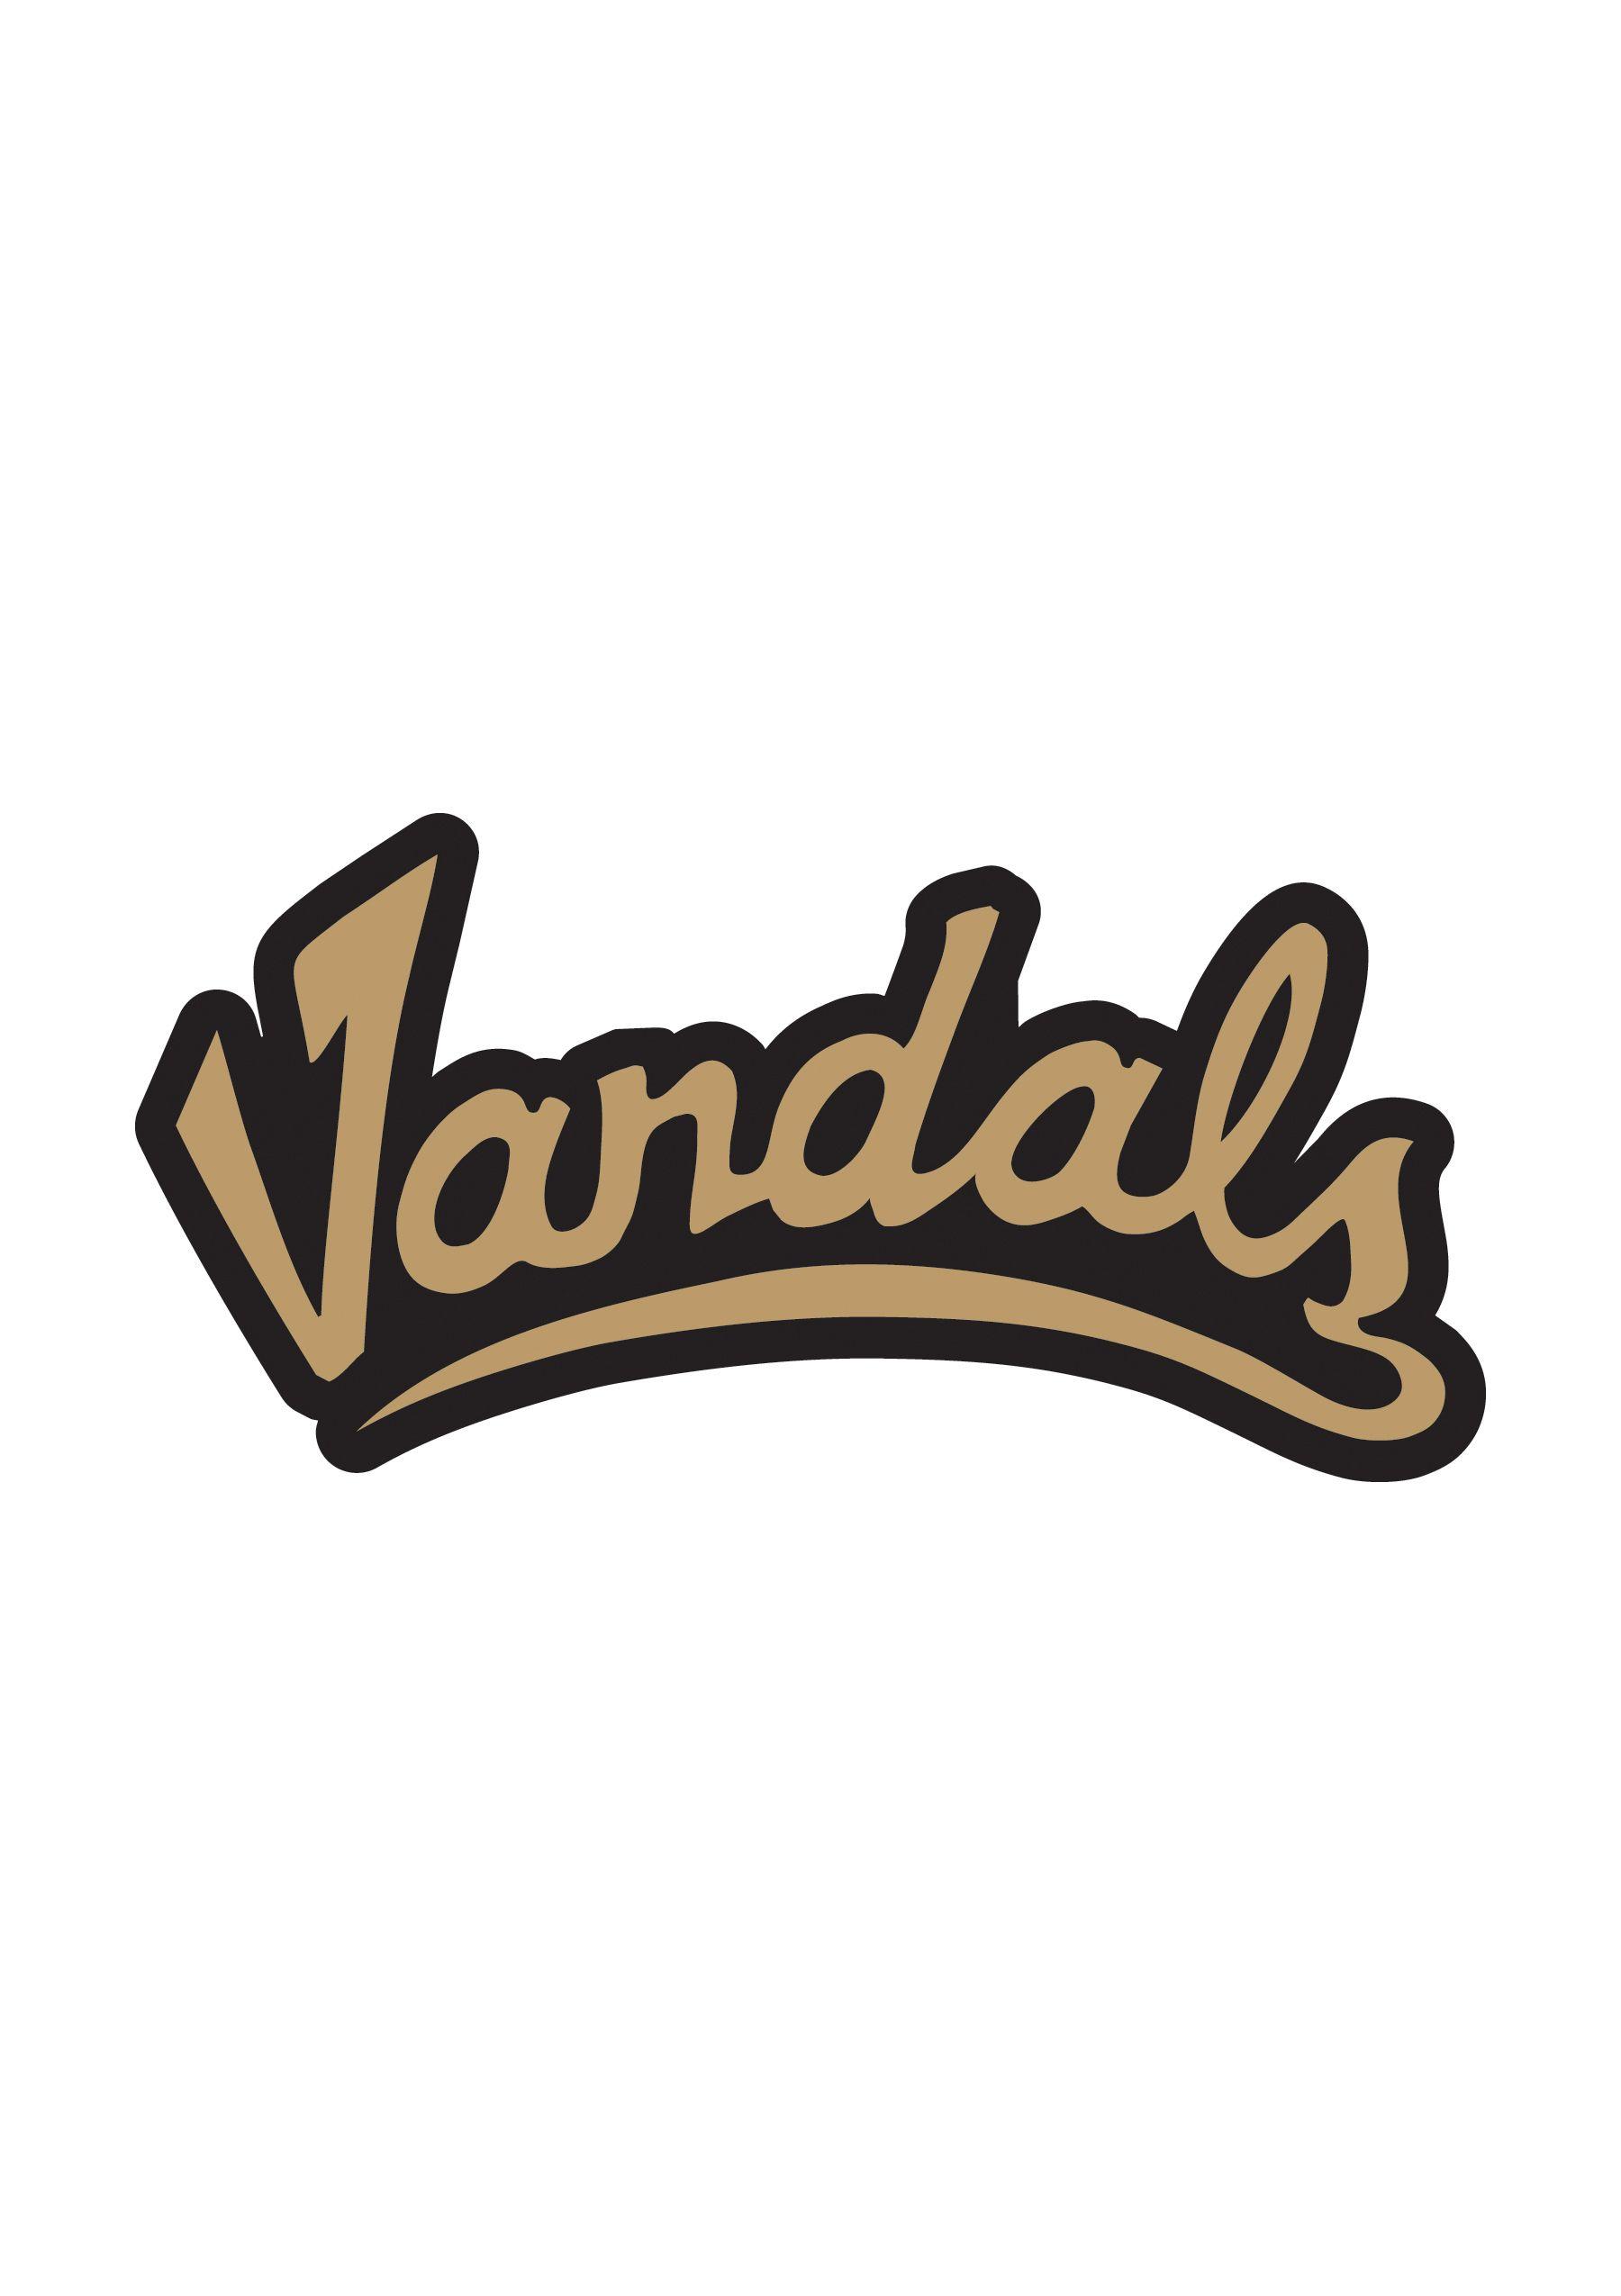 Vandals Logo - Idaho vandals Logos